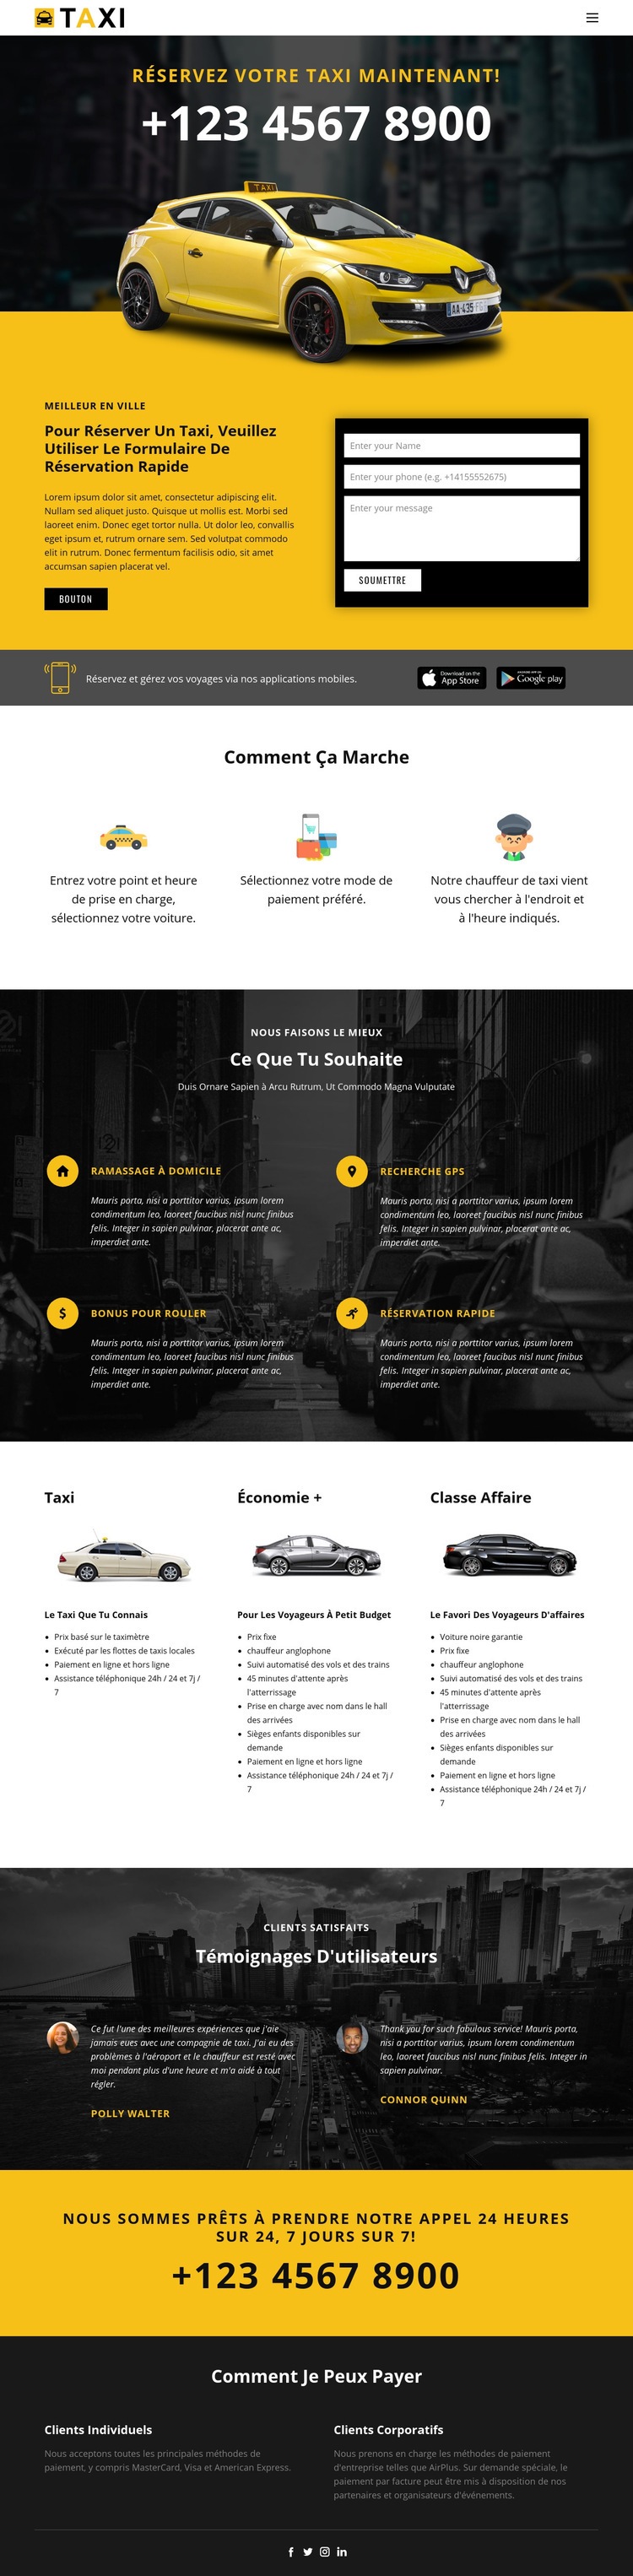 Voitures de taxi les plus rapides Conception de site Web